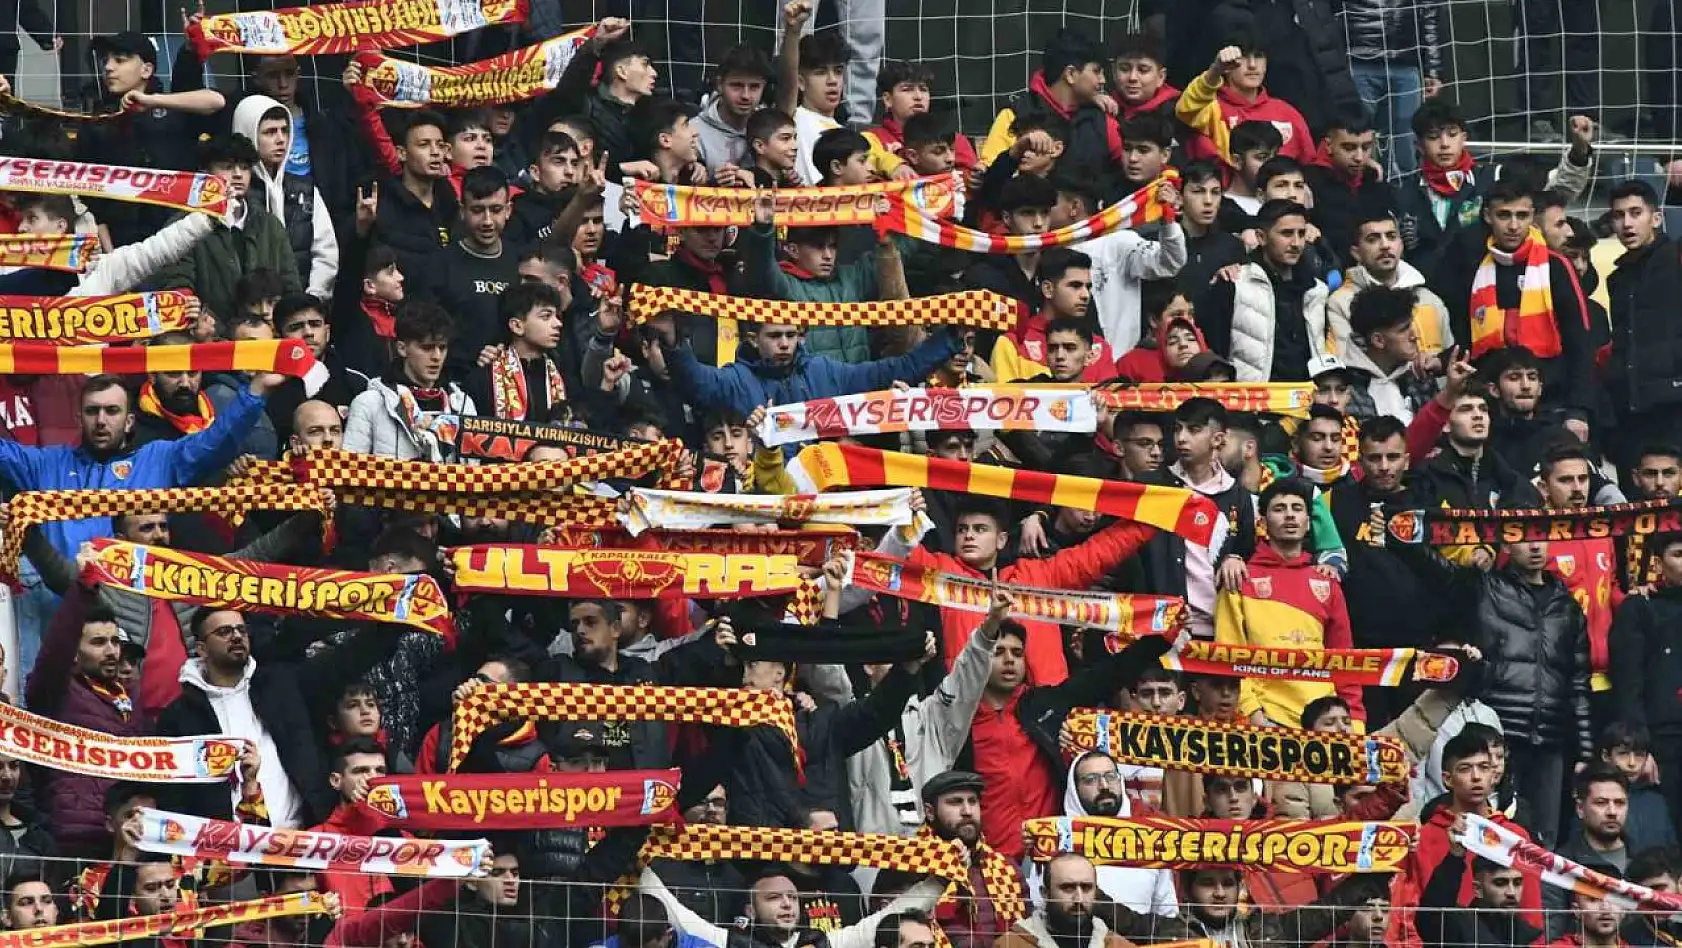 Kayserispor'a 78 bin 685 taraftar destek verdi